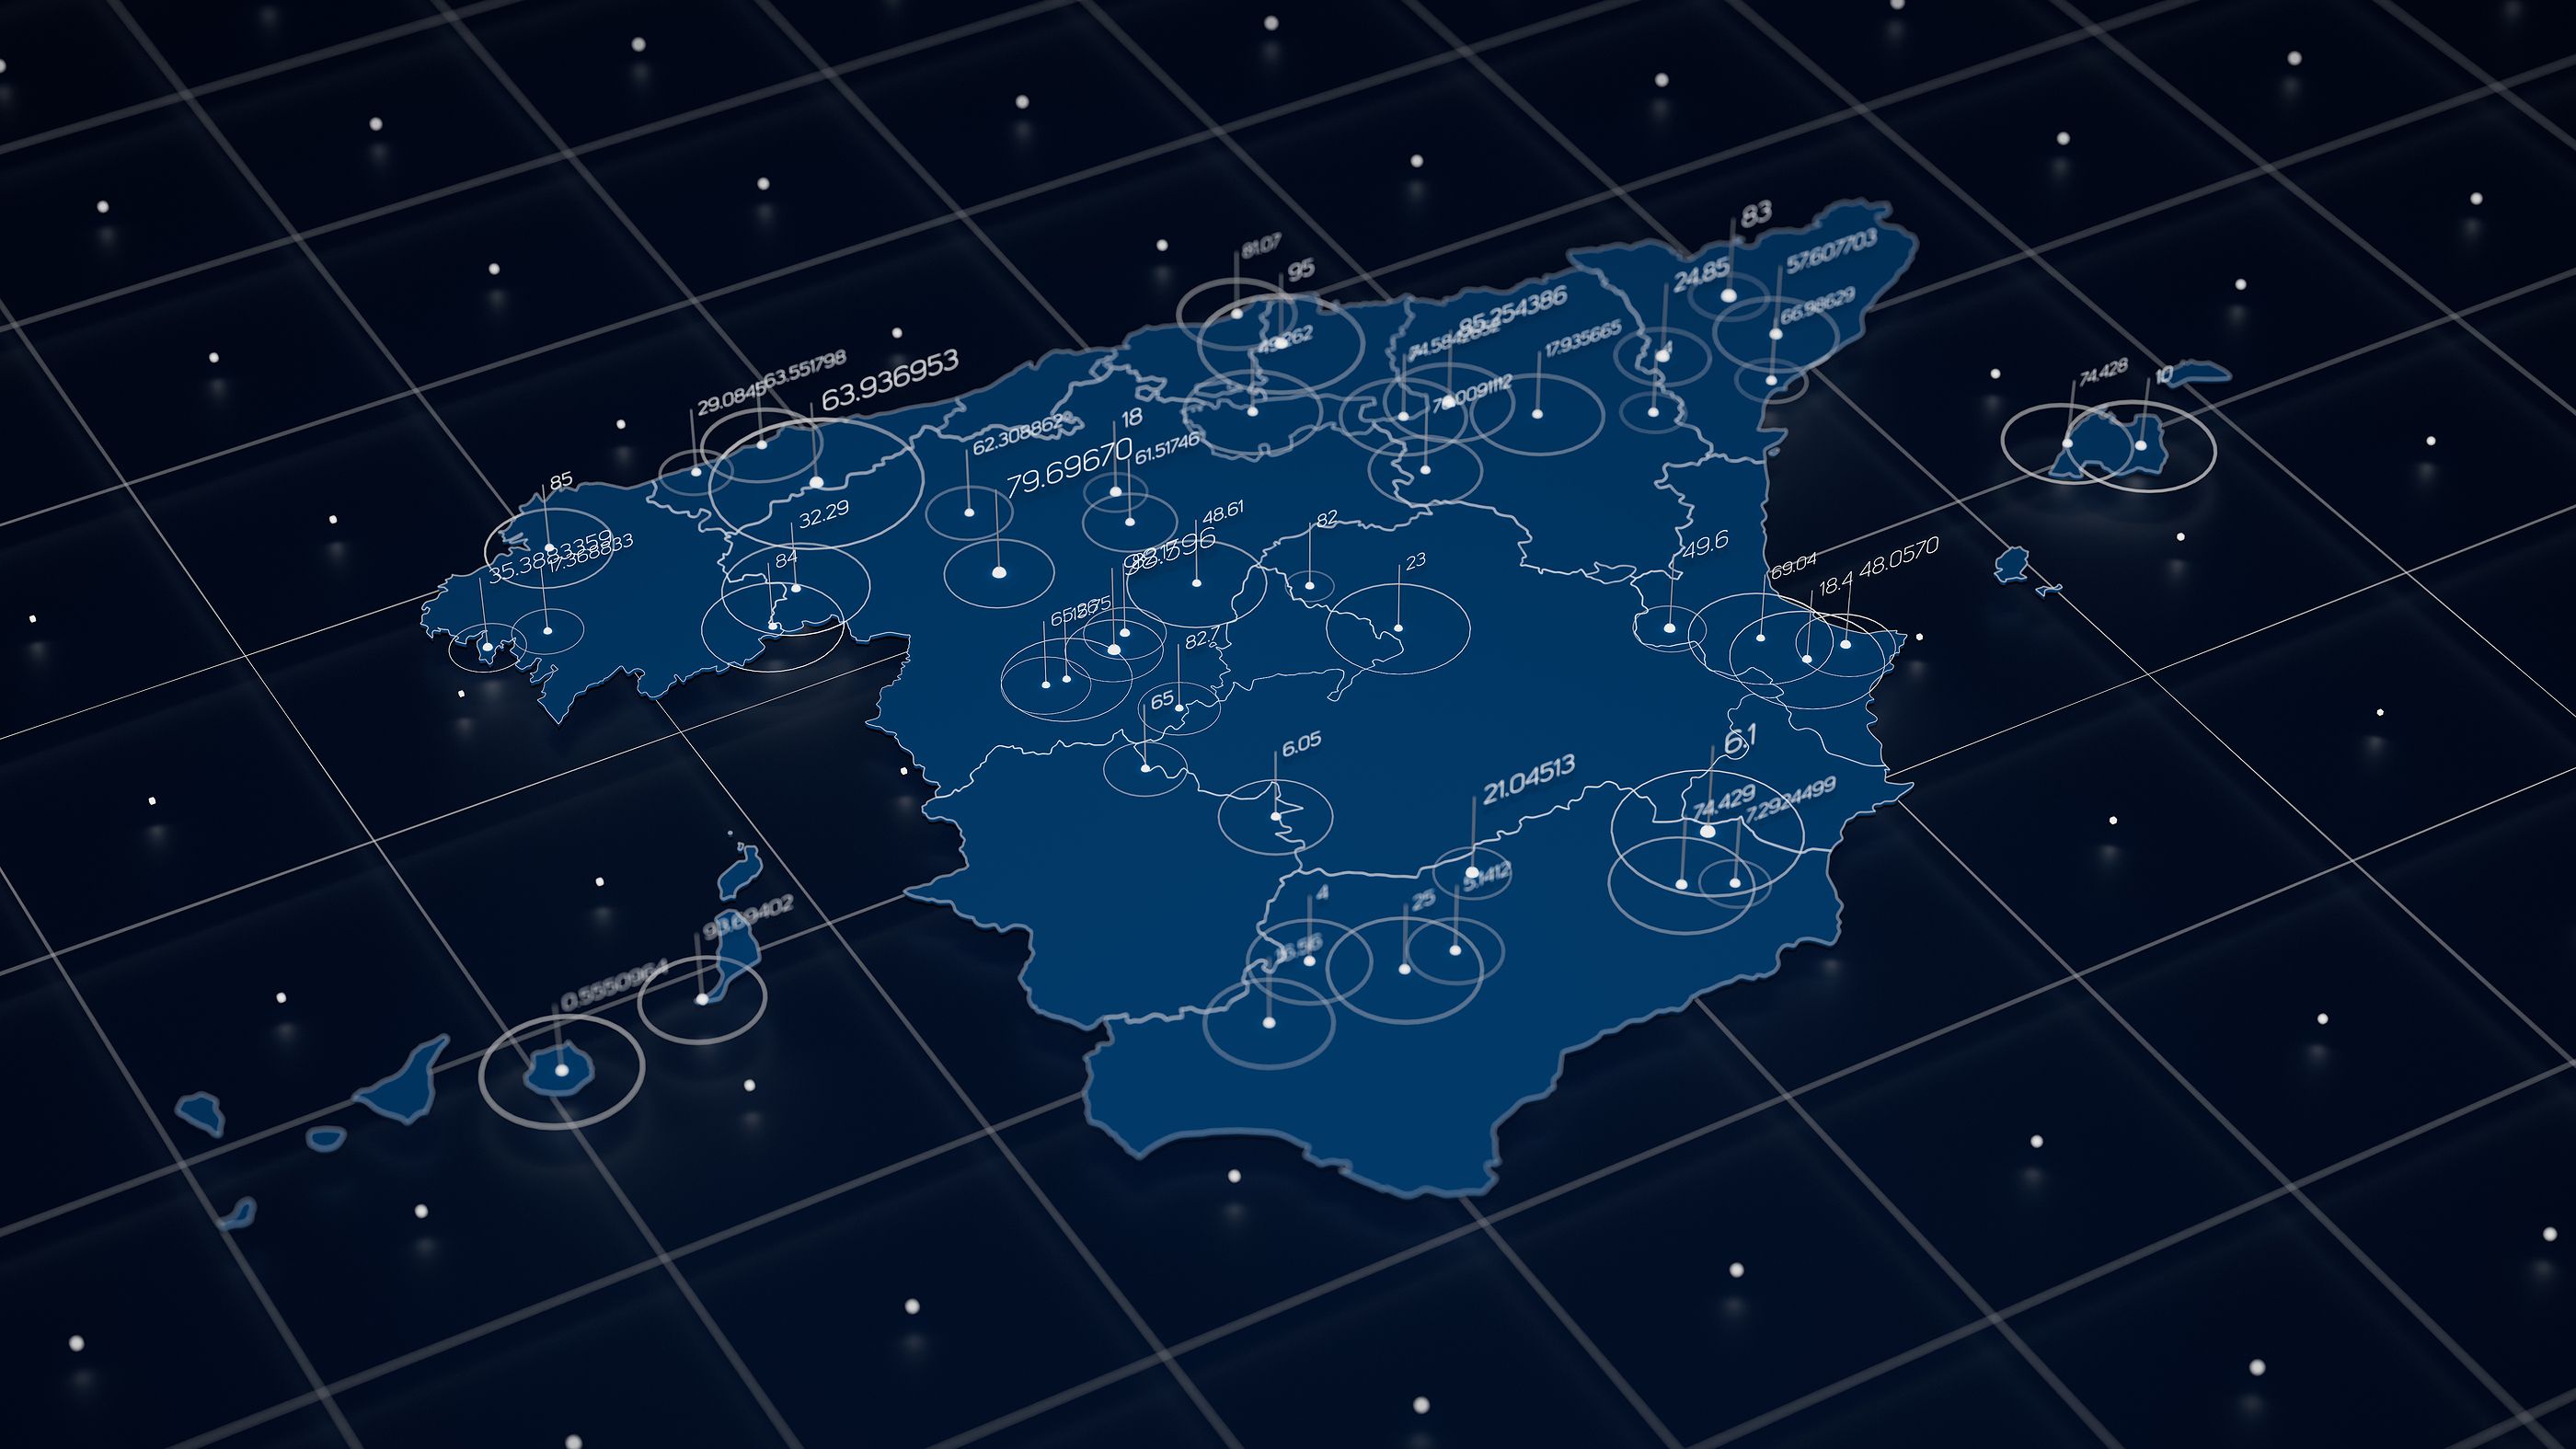 El mapa de las asociaciones de alzhéimer en España